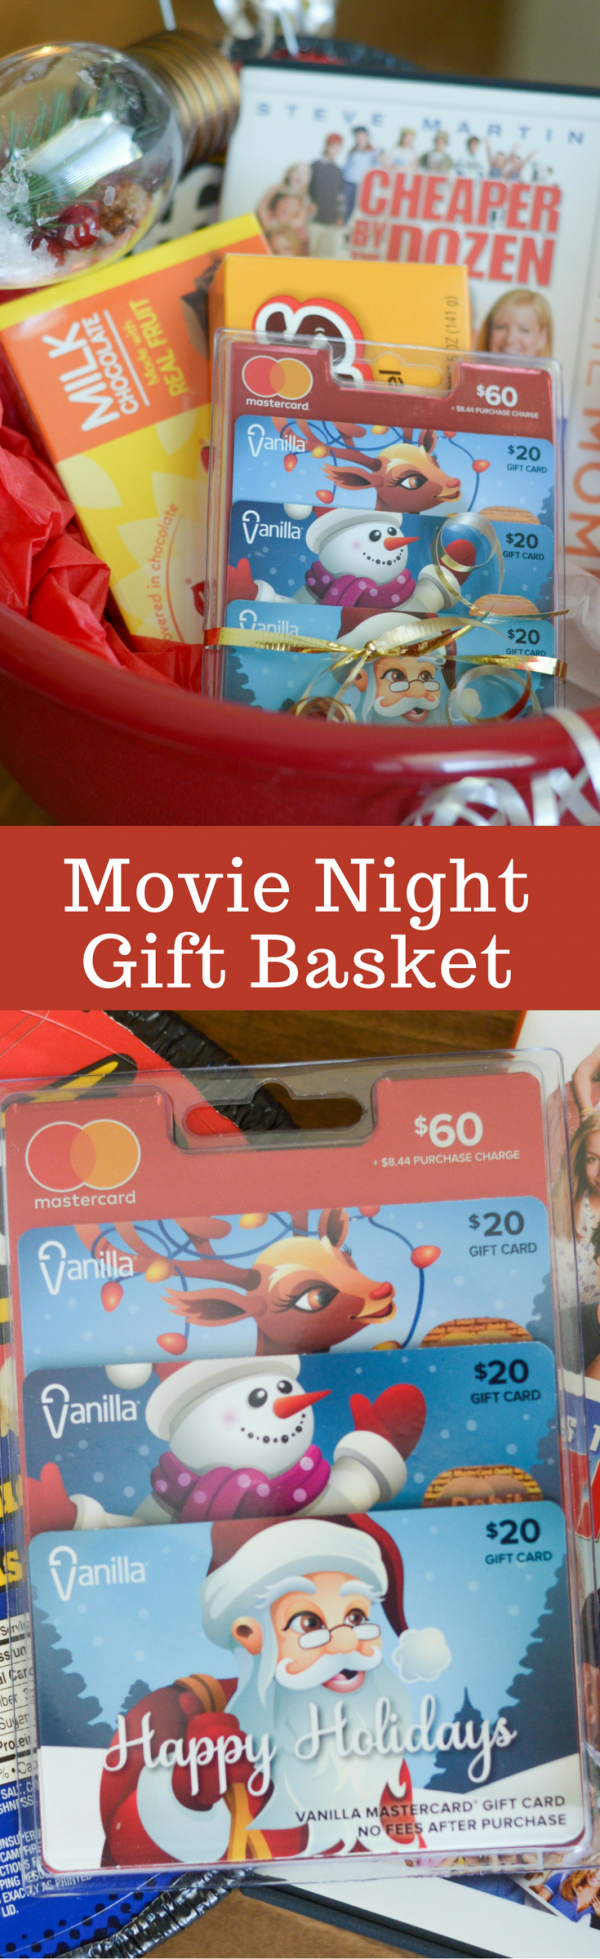 Movie Night Gift Basket #SaveMoneyGiveBetter2017 #ad 